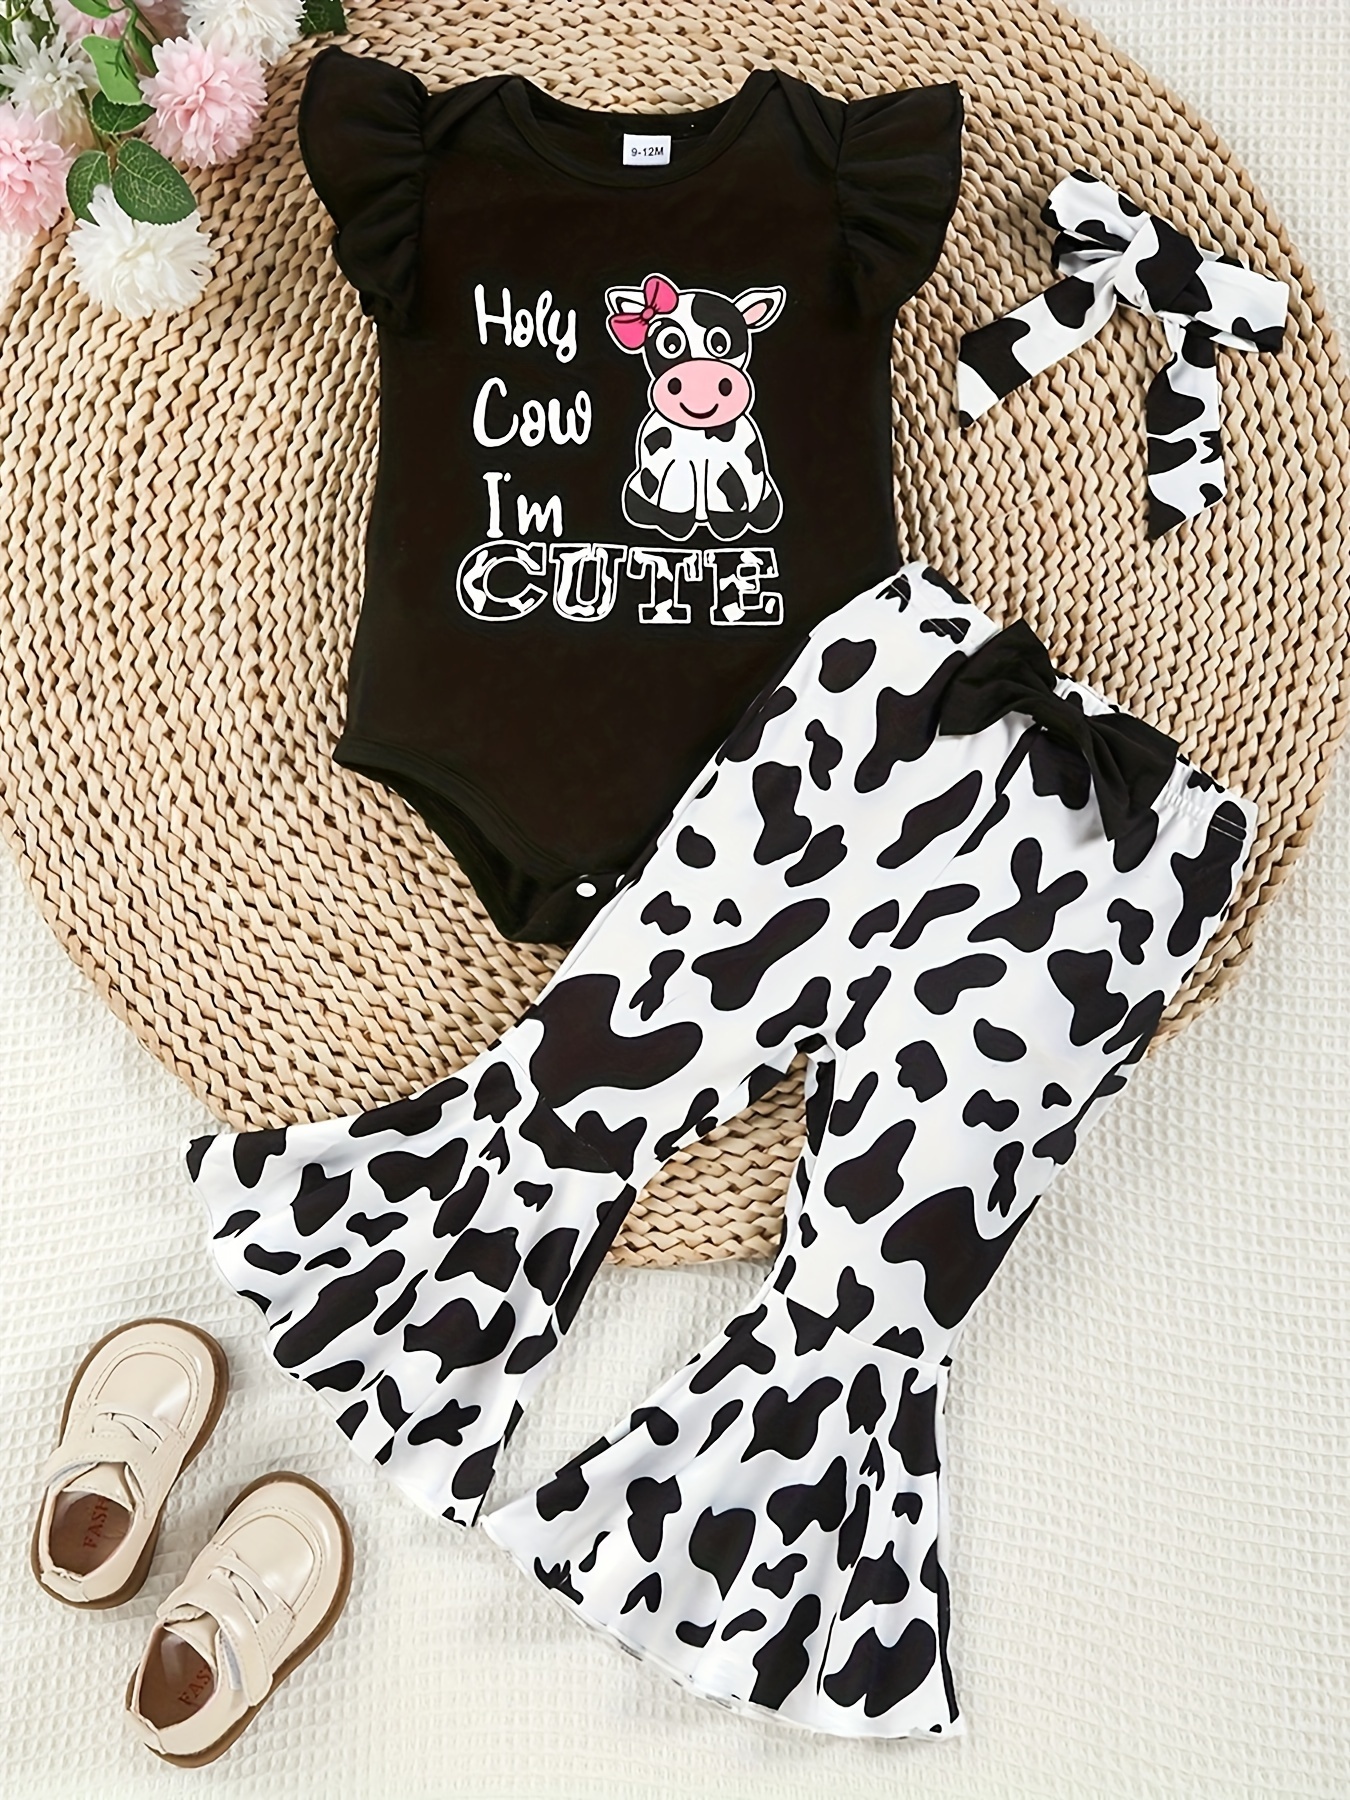 Pelele para bebé de Baby Moo's, diseño de vaca; disfraz de bebé